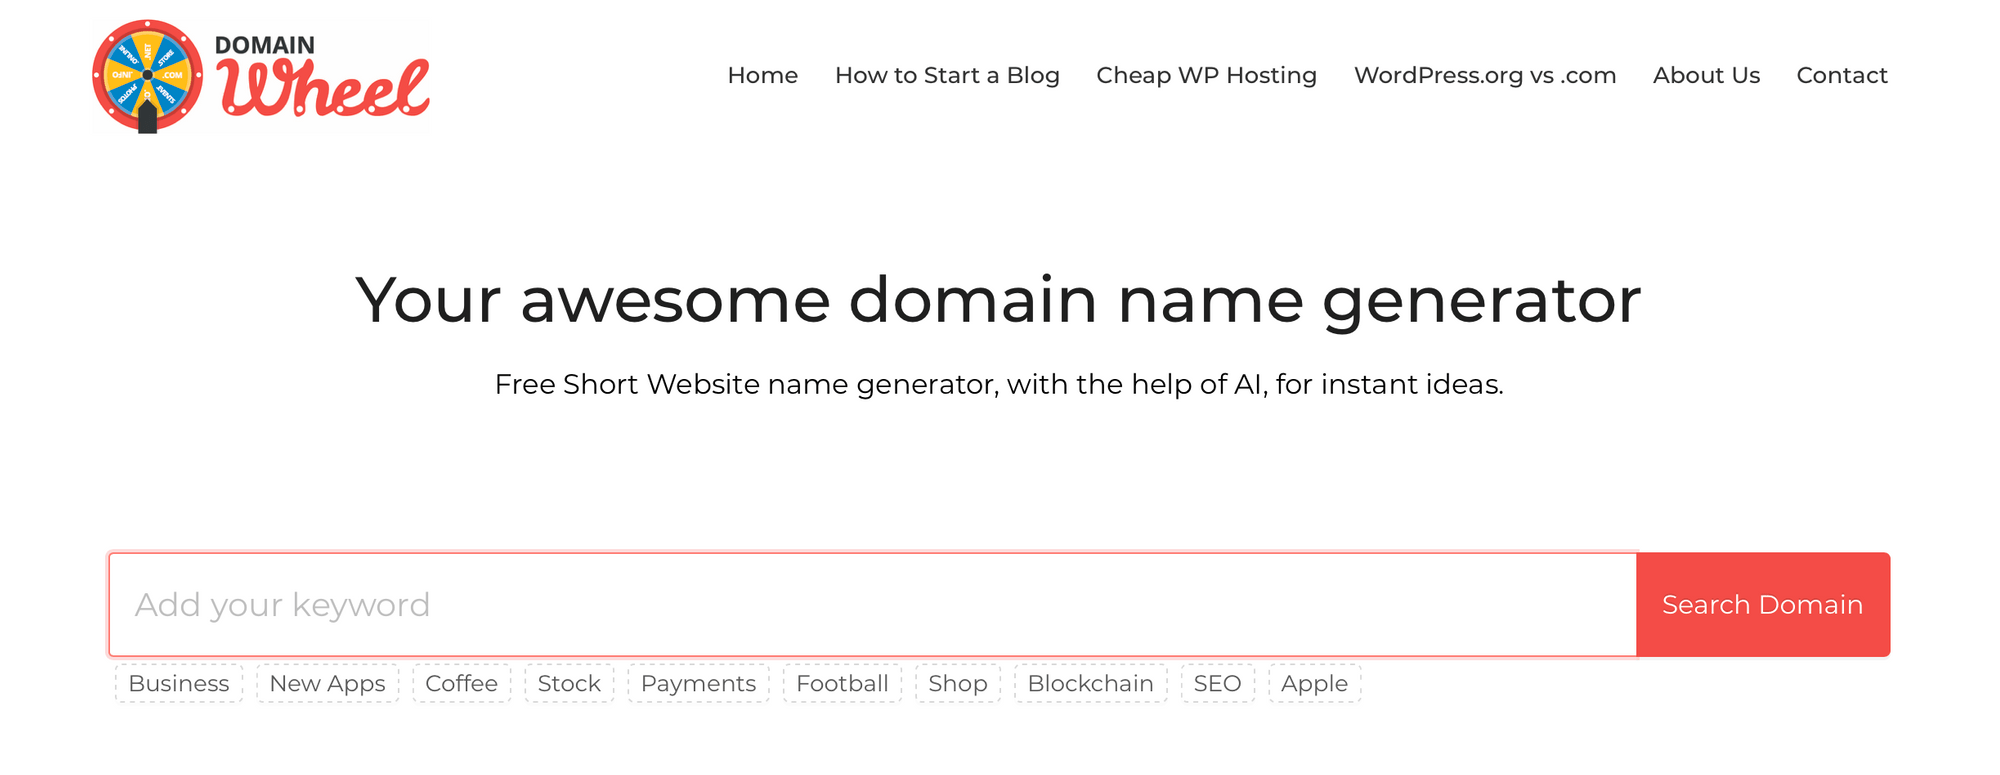 Le site Web Domain Wheel.